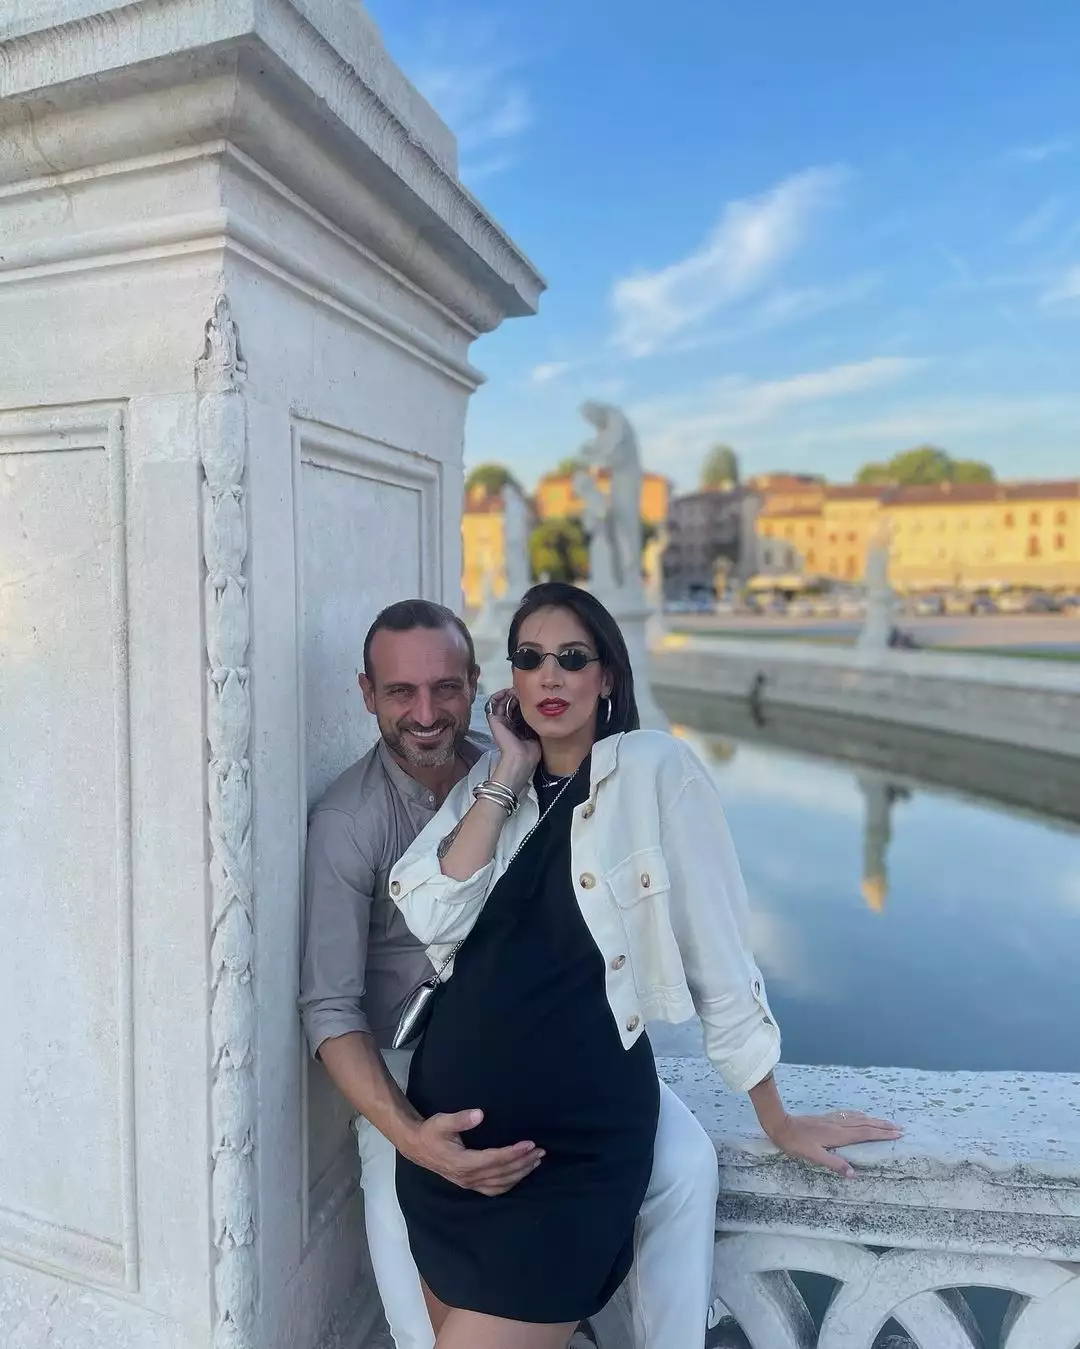 Σοφία Λεοντίτση: Σε προχωρημένη εγκυμοσύνη στην Ιταλία -Αγκαλιά με τον αγαπημένο της